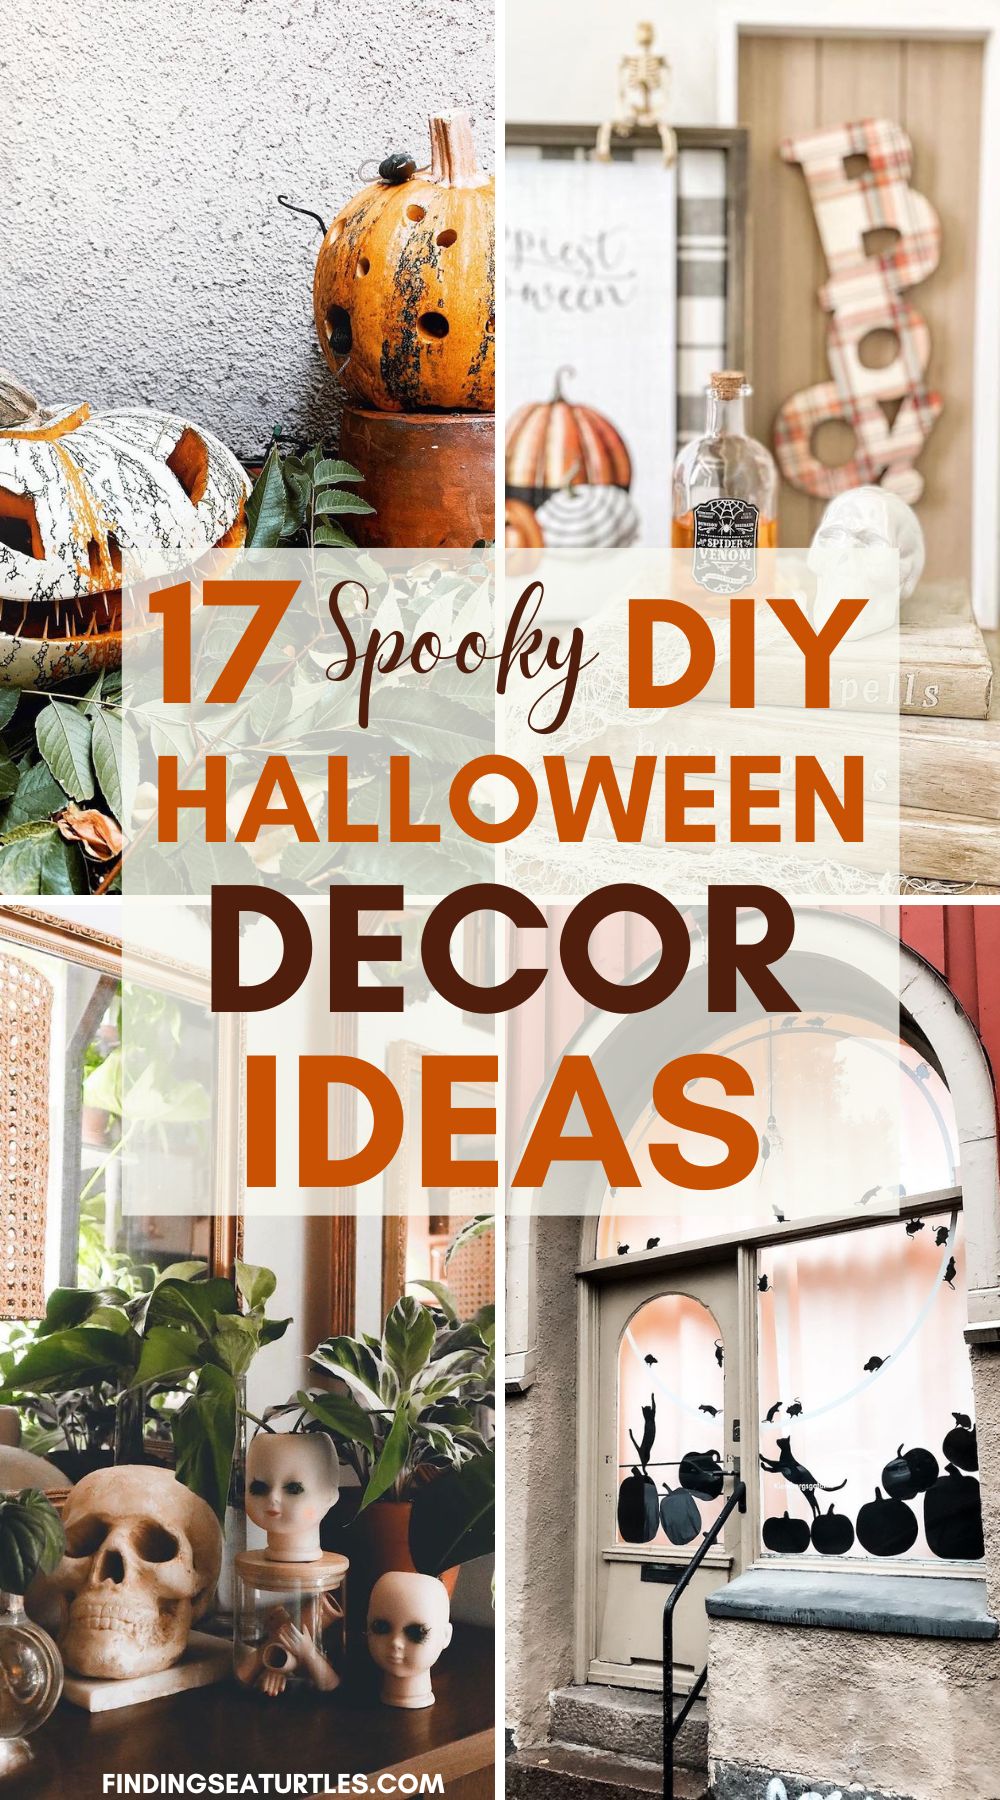 17 Spooky DIY Halloween Decor Ideas